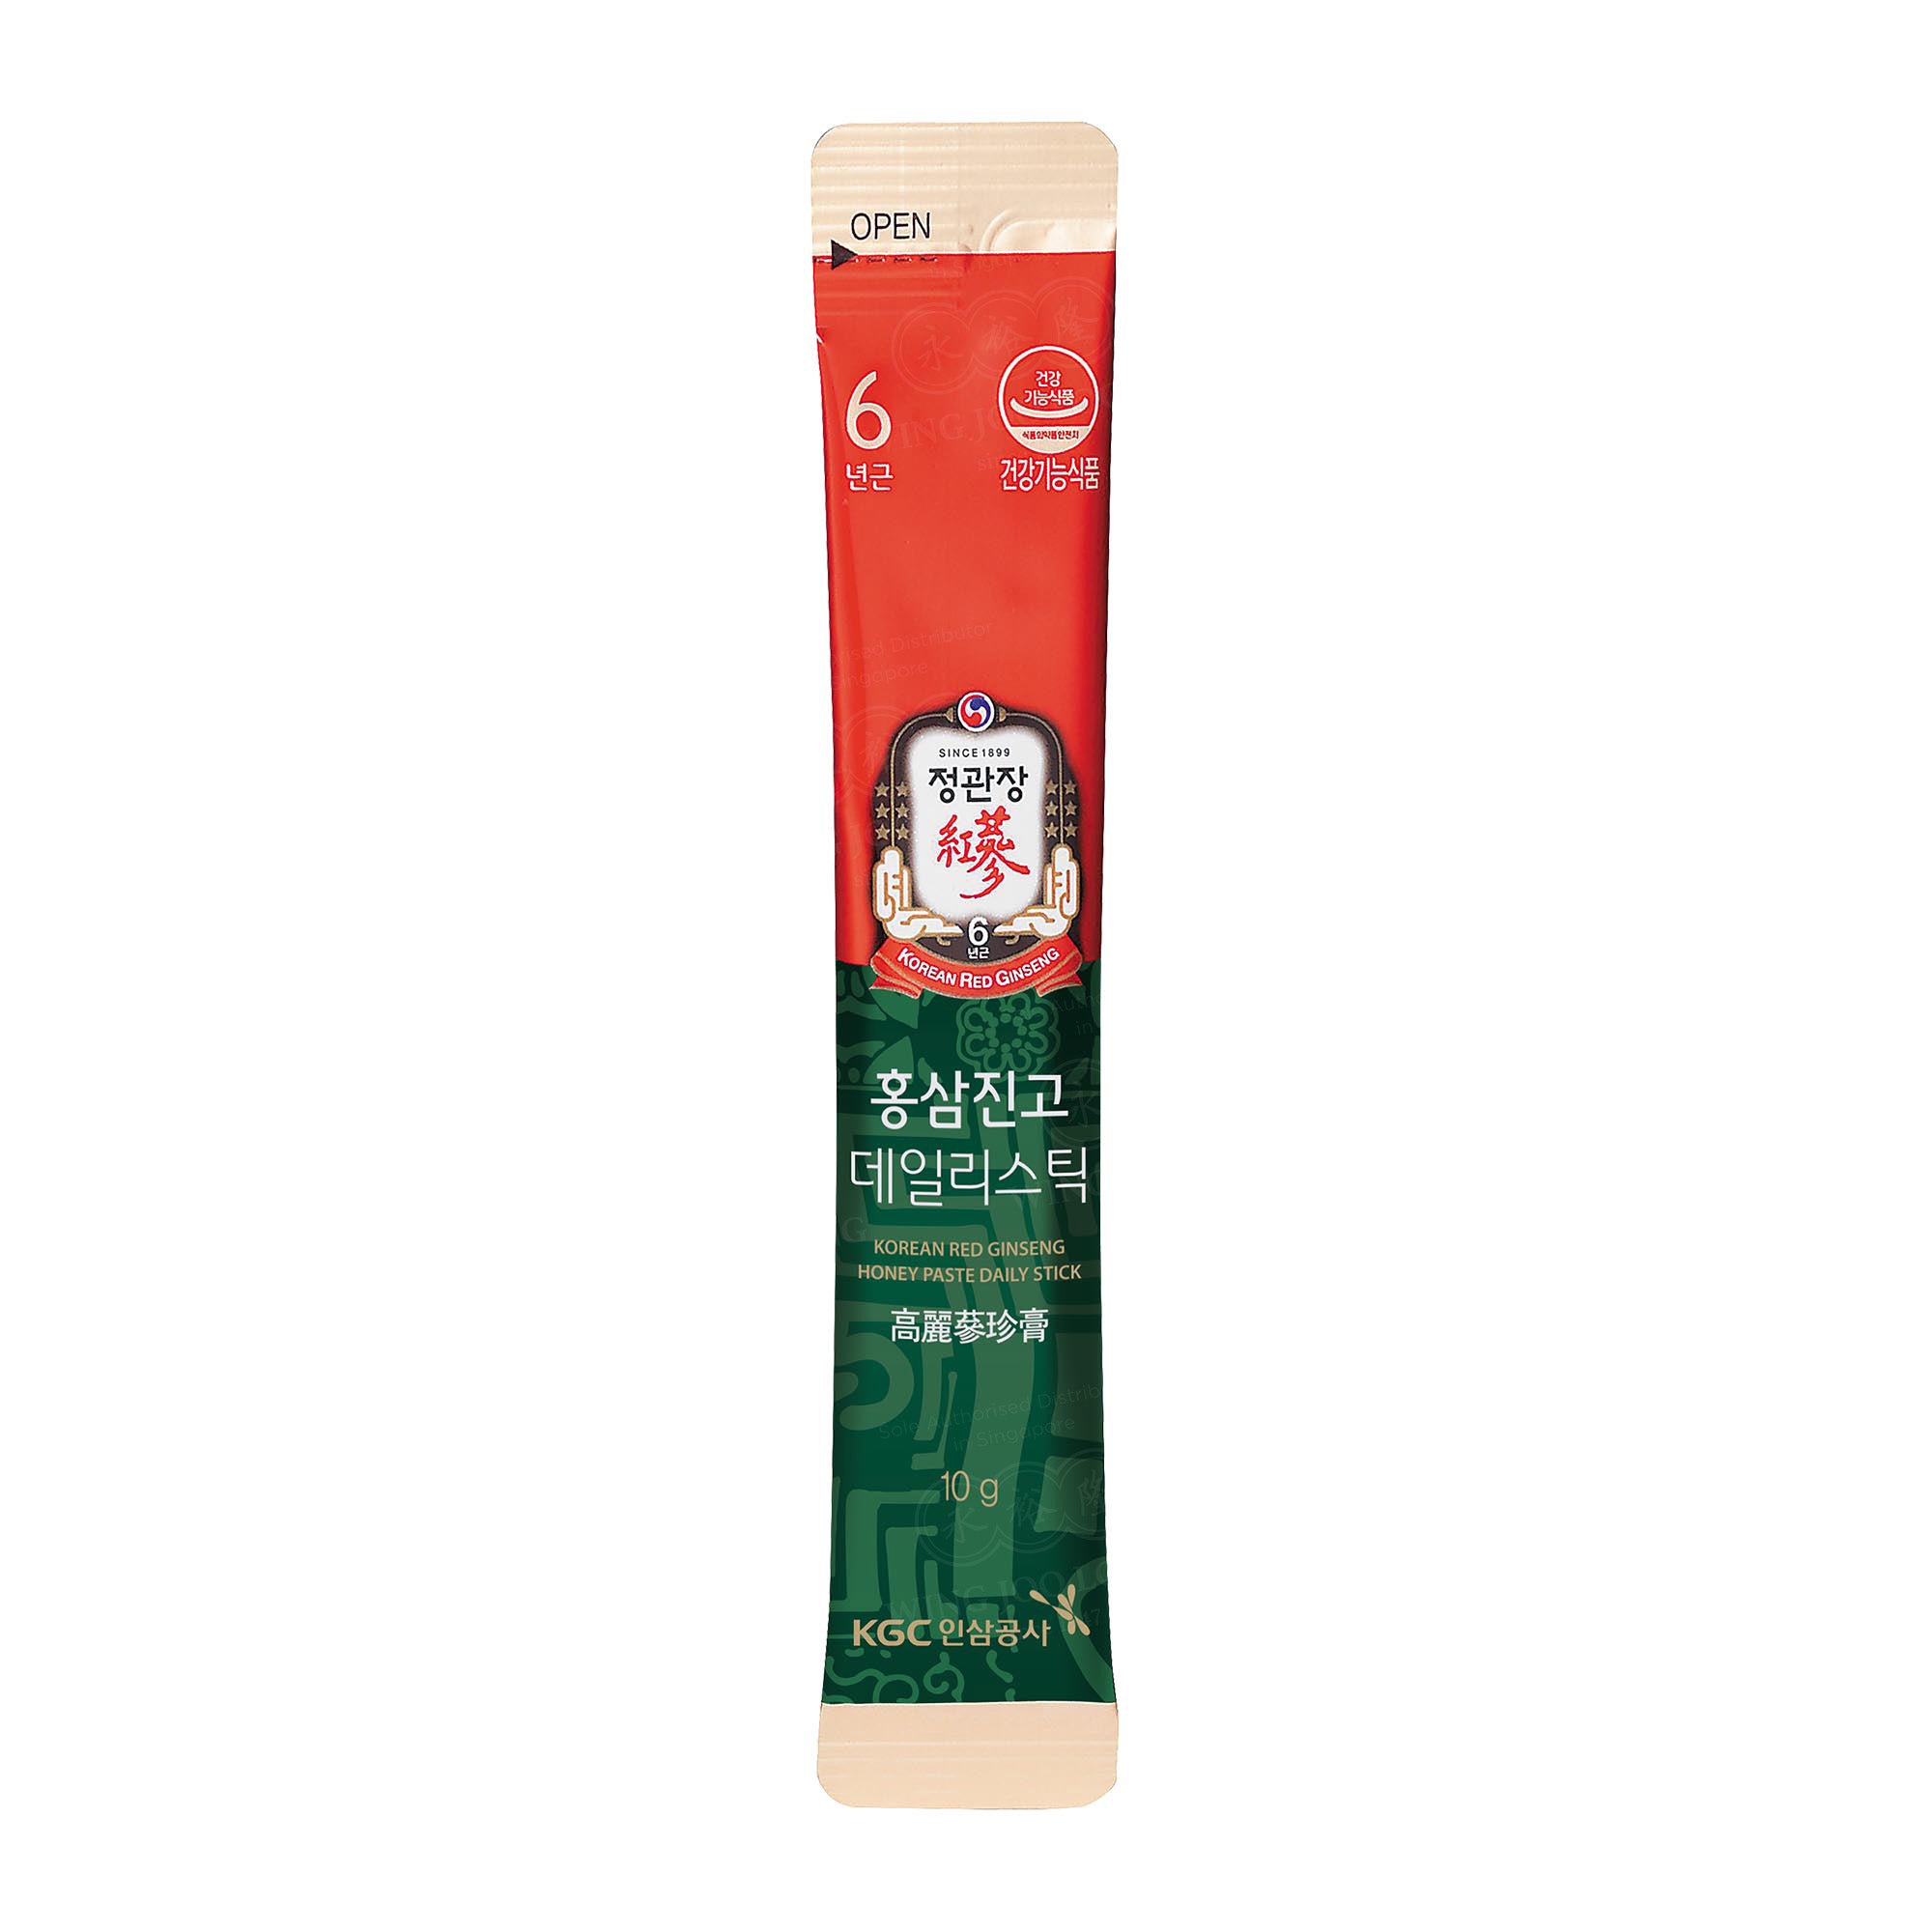 Cheong Kwan Jang Korean Red Ginseng Honey Paste Daily Stick 高丽参珍膏